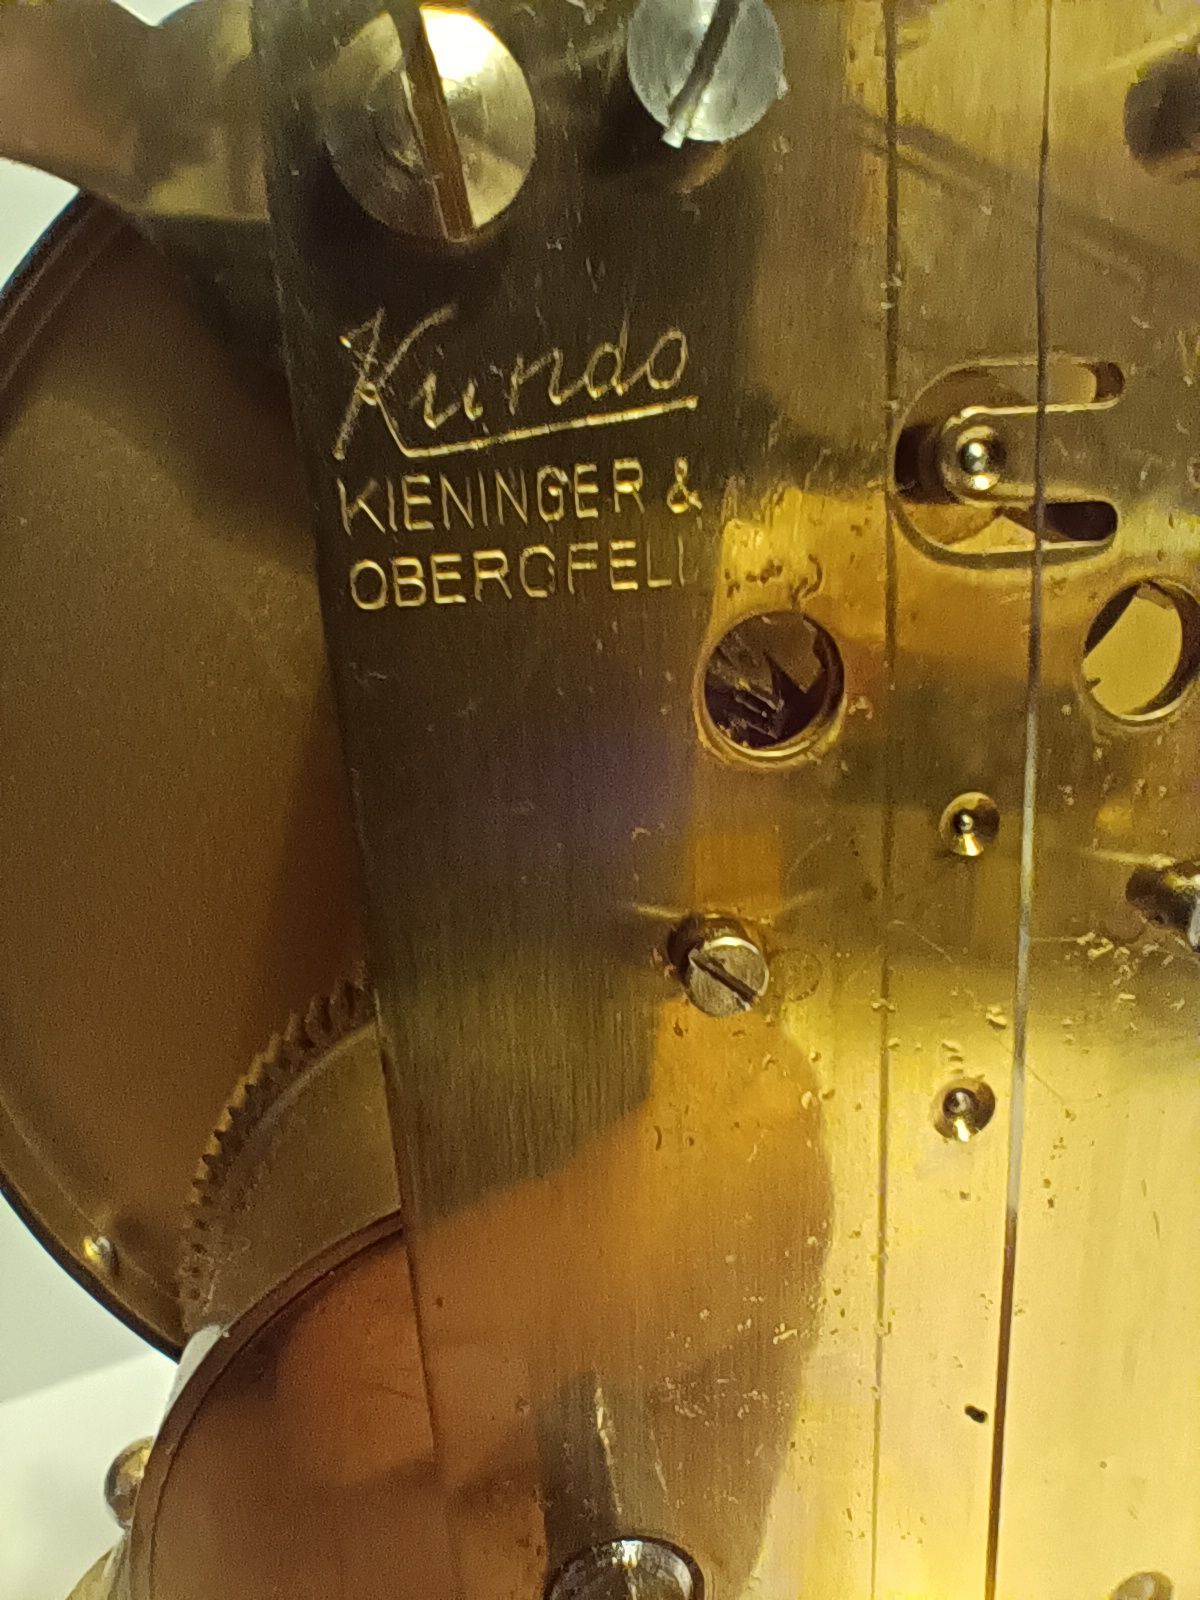 Ceas KUNDO Keninger & Oberfell mecanic din alama cupola sticla